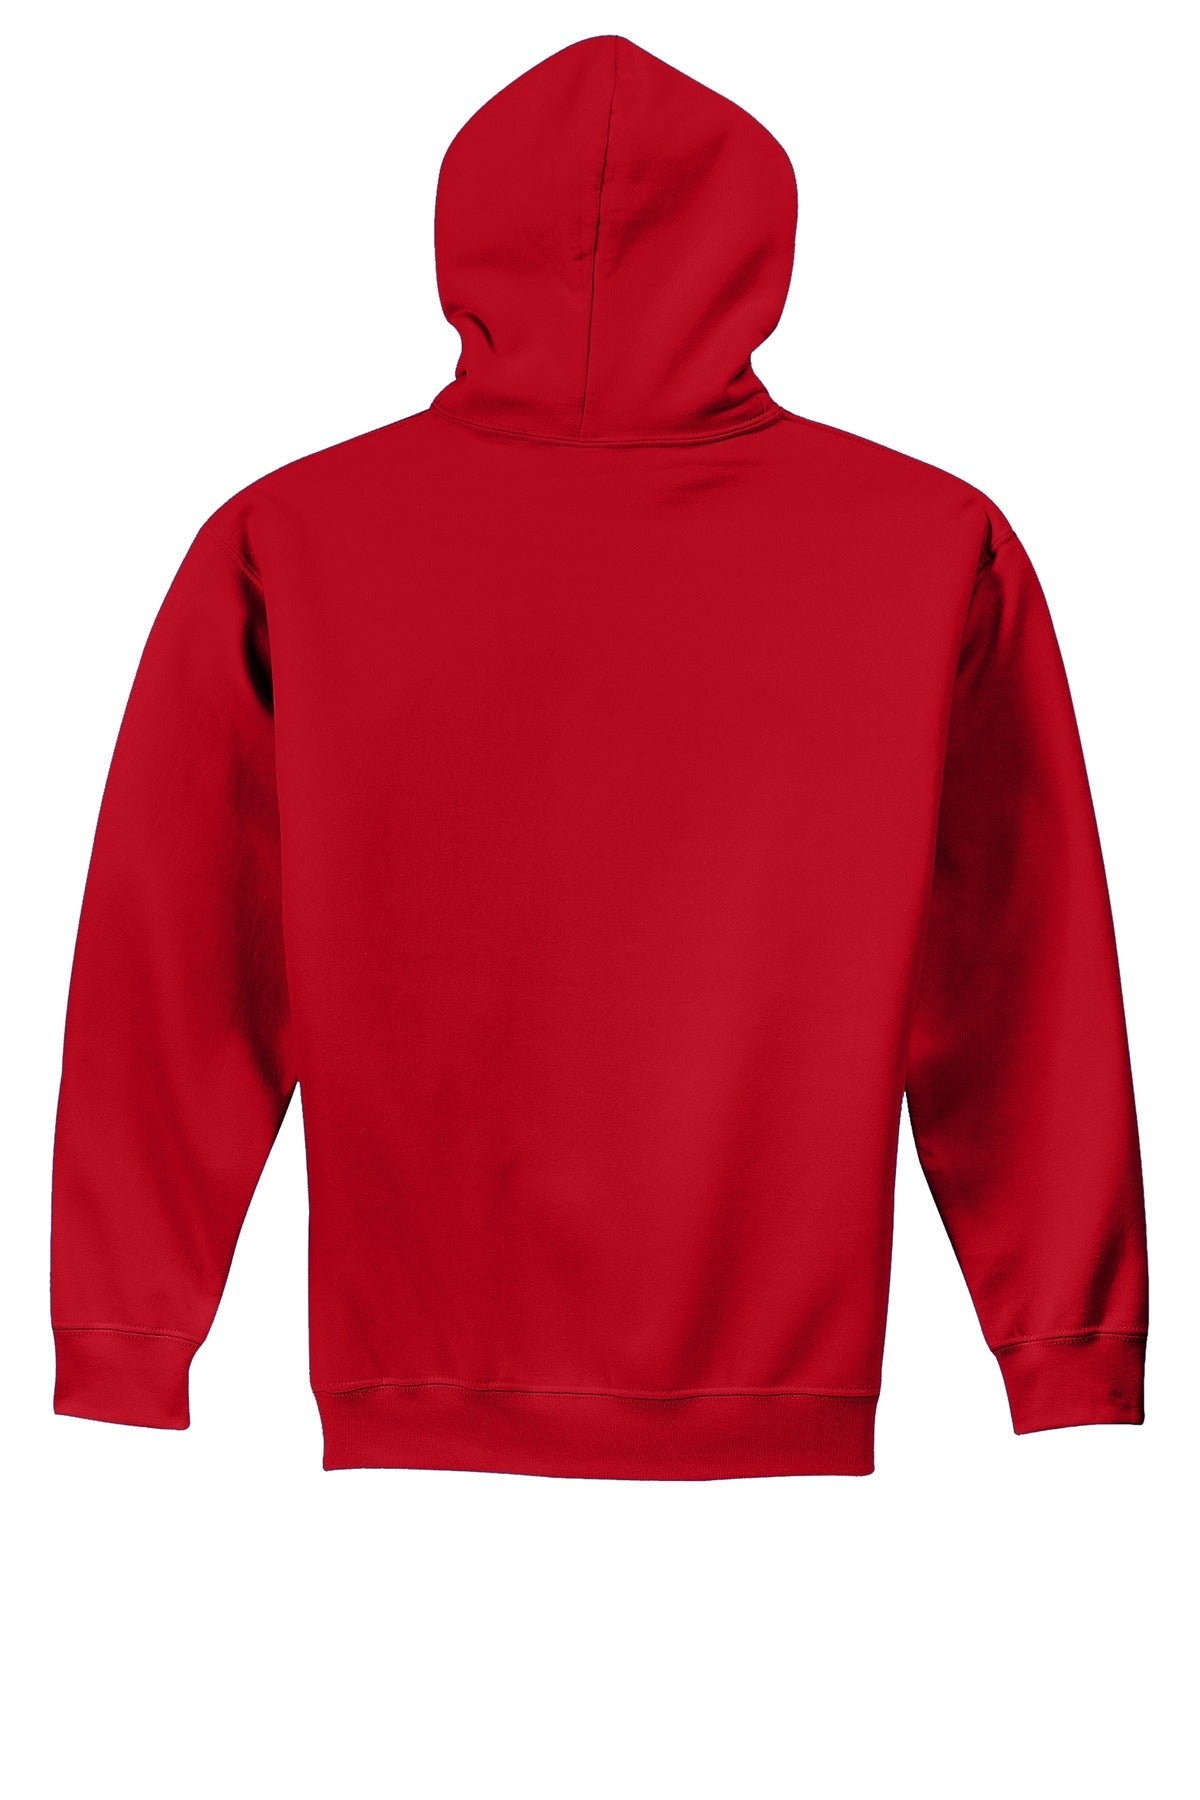 Gildan® - Youth Heavy Blend™ Hooded Sweatshirt. 18500B [Red] - DFW Impression